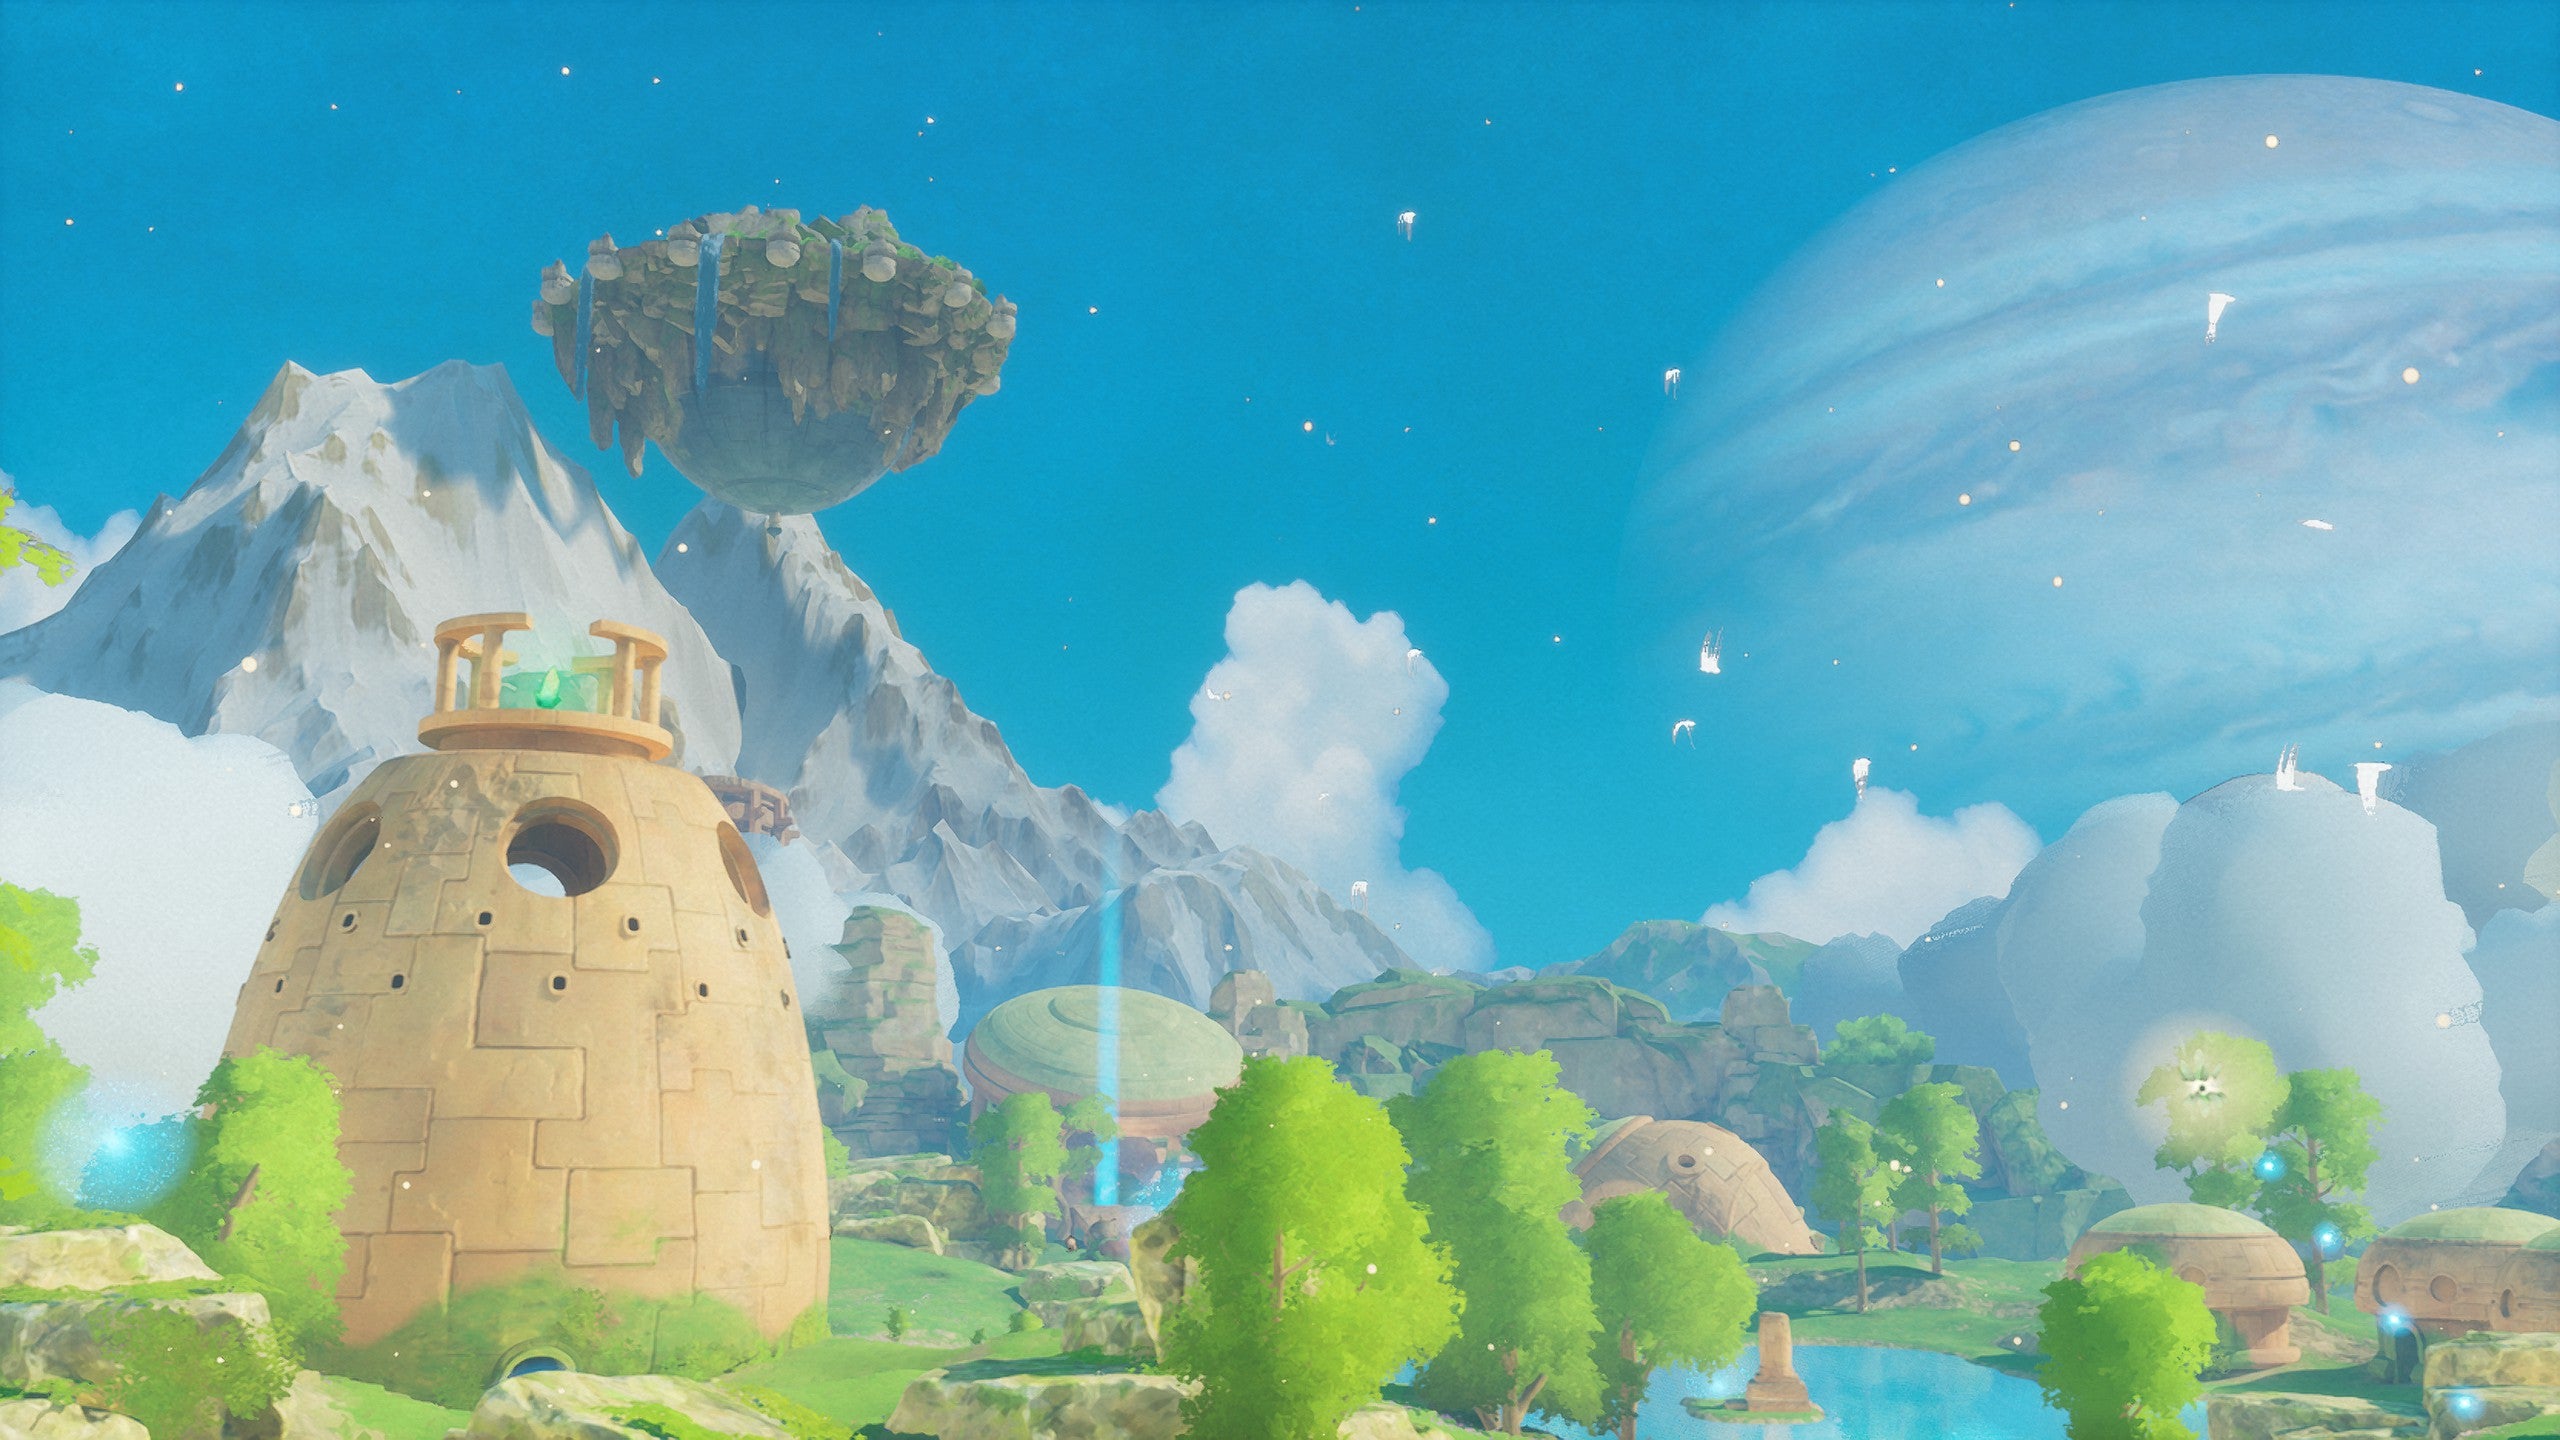 유럽에서 흐르는 크리스털을 가진 탑이 주위에 떠있는 섬 앞에 있으며 하늘에는 희미한 목성 이미지가 보인다